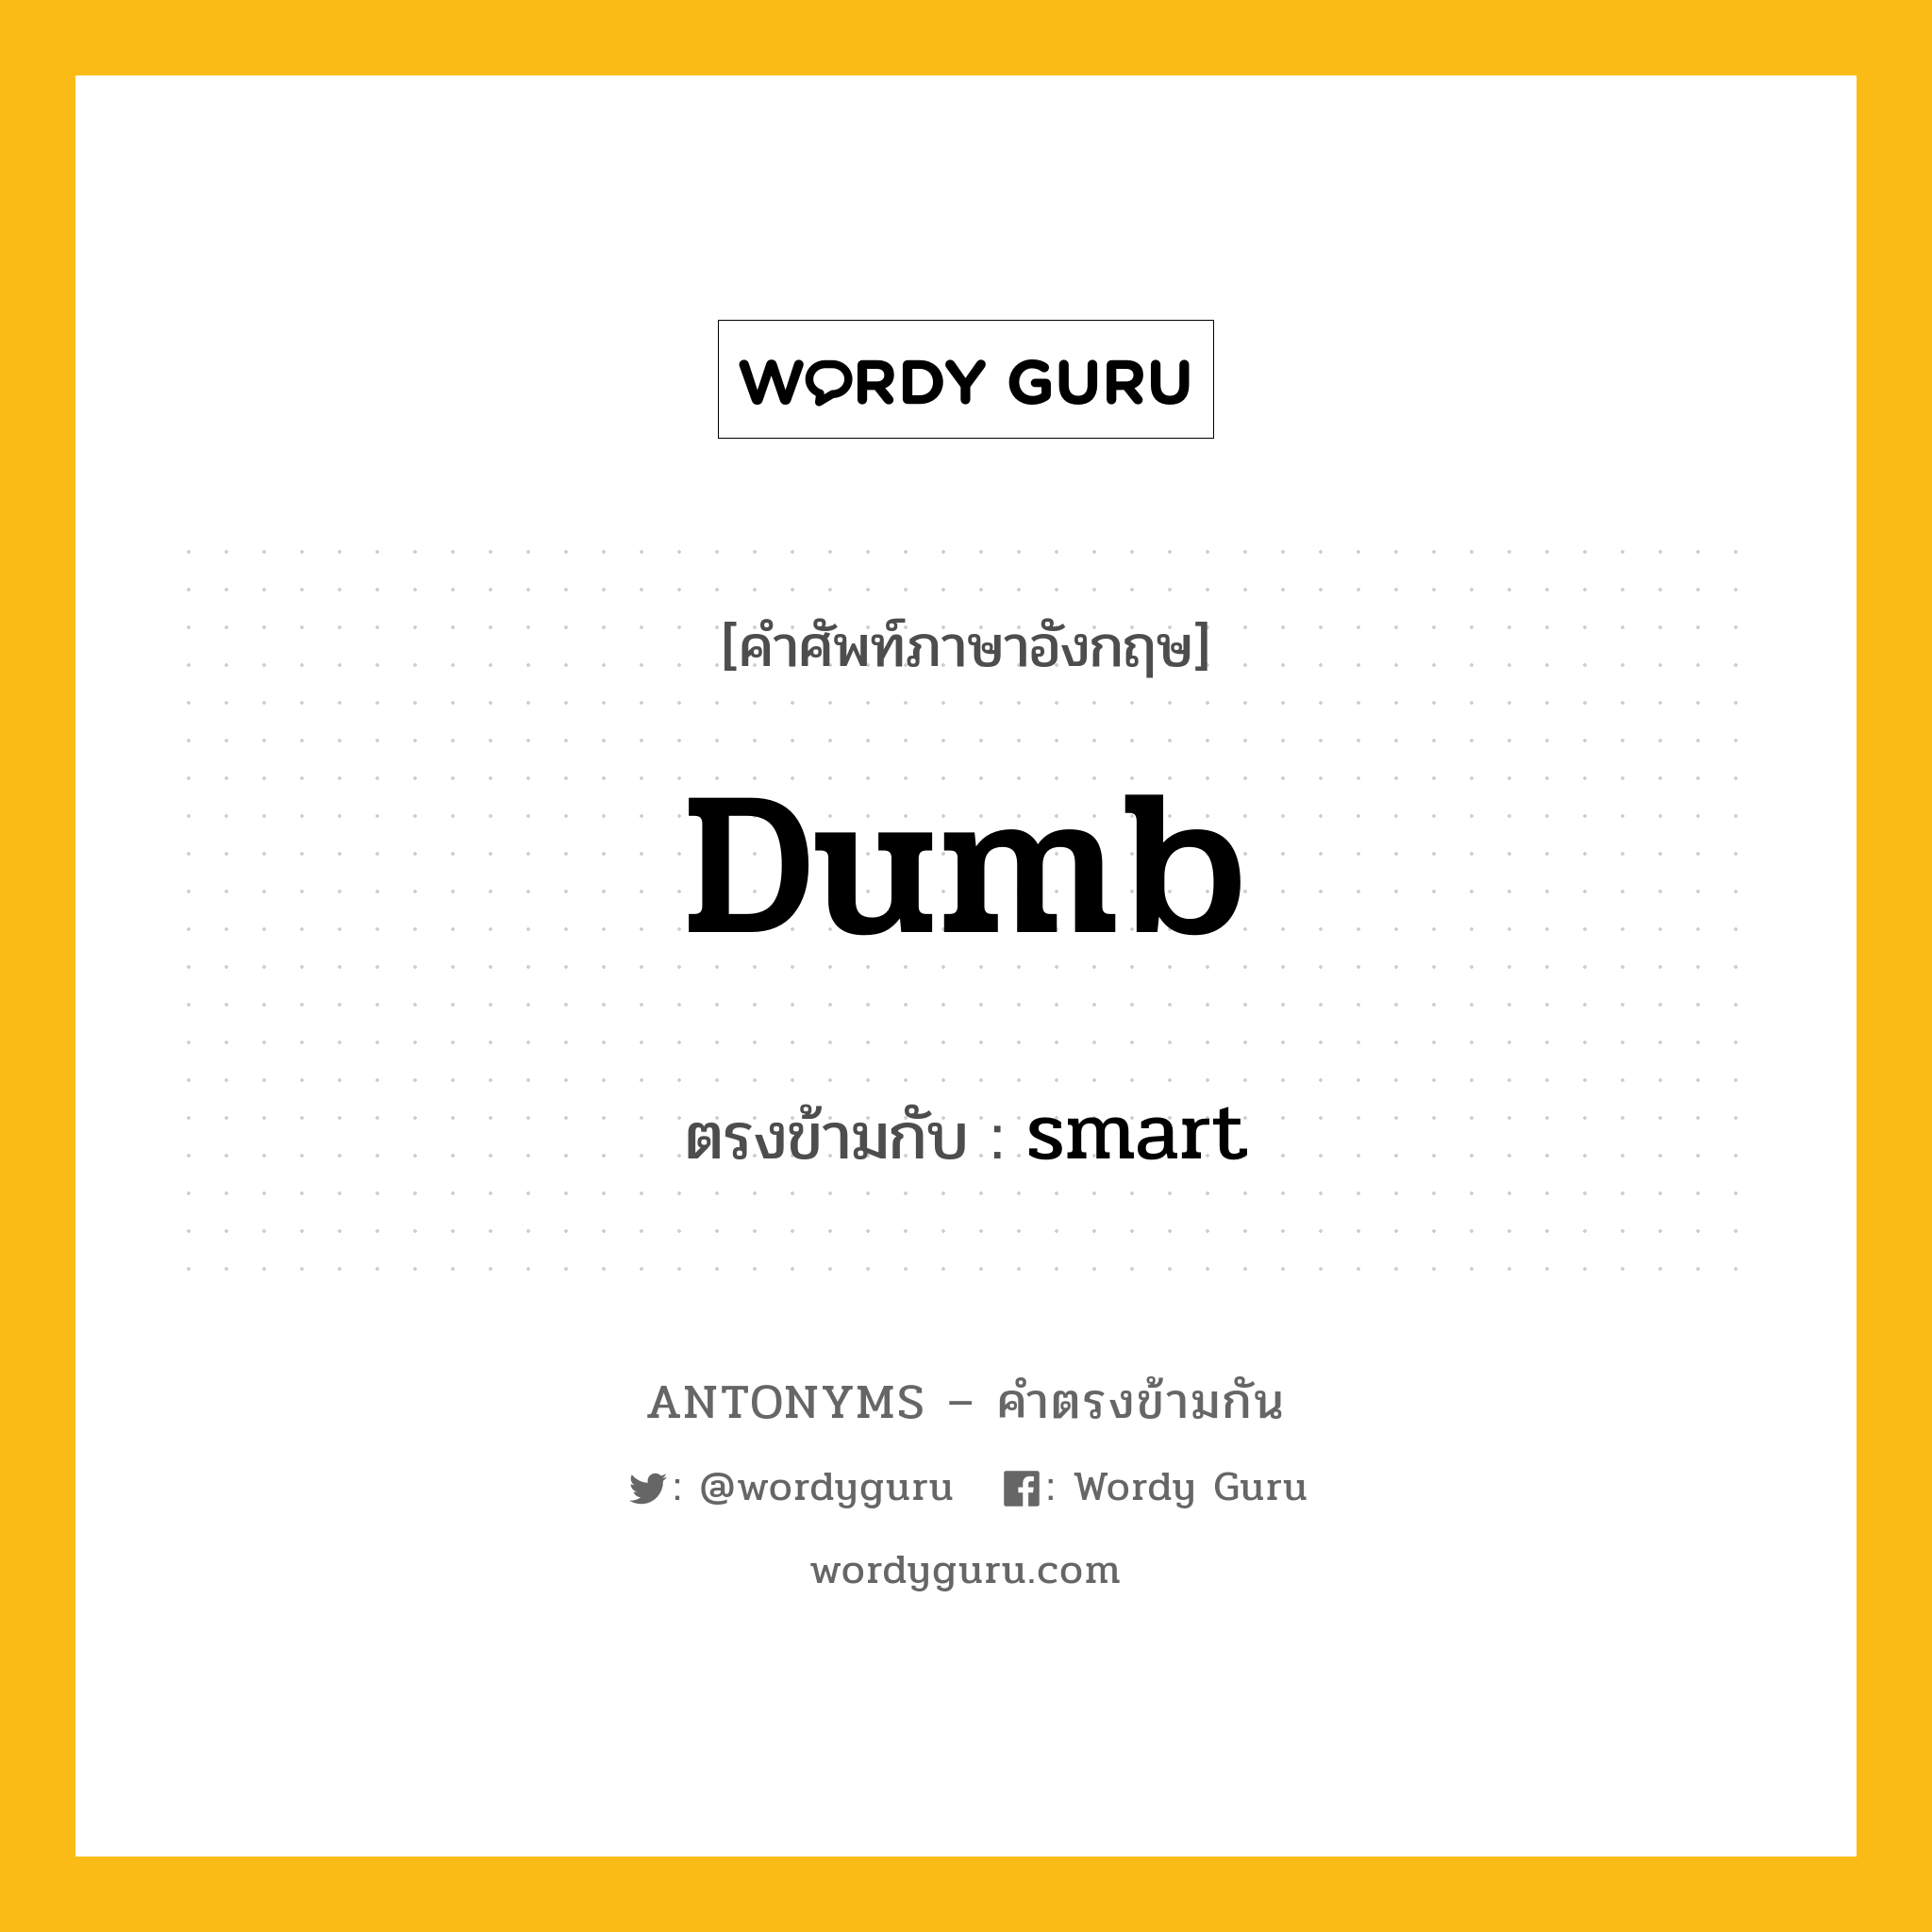 dumb เป็นคำตรงข้ามกับคำไหนบ้าง?, คำศัพท์ภาษาอังกฤษ dumb ตรงข้ามกับ smart หมวด smart